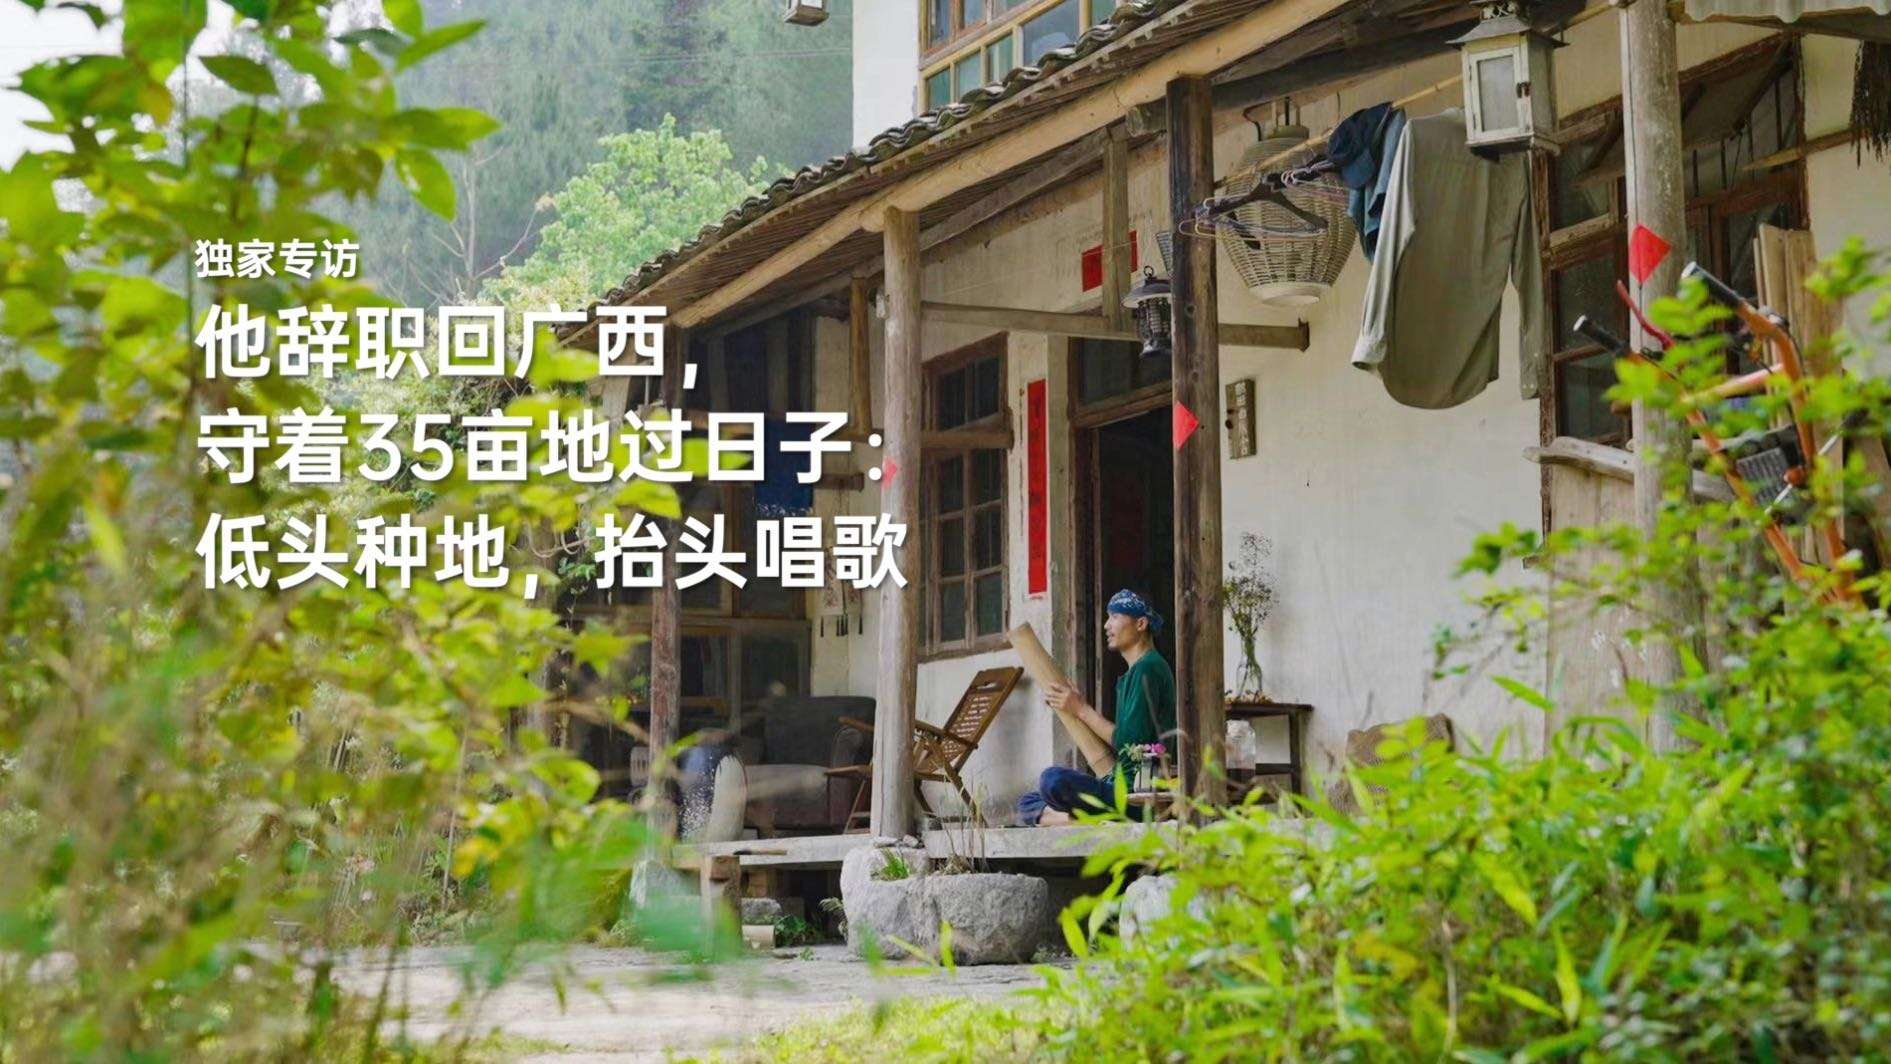 音乐人岜農｜他辞职回广西，守着35亩地过日子：低头种地，抬头唱歌